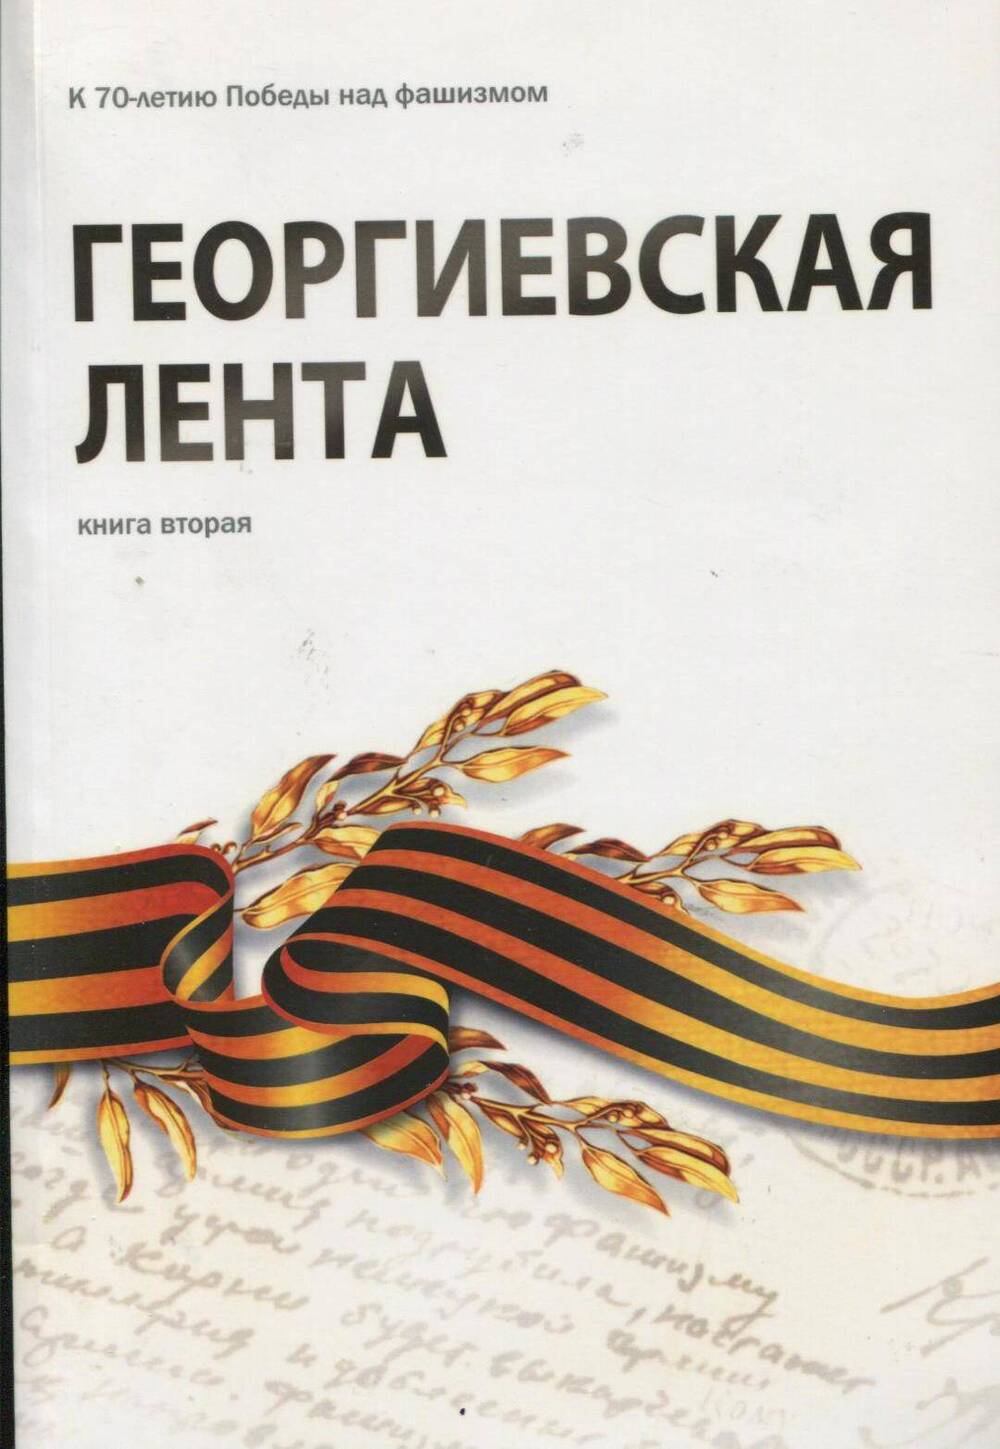 КнигаГеоргиевская лента книга вторая 2015г.